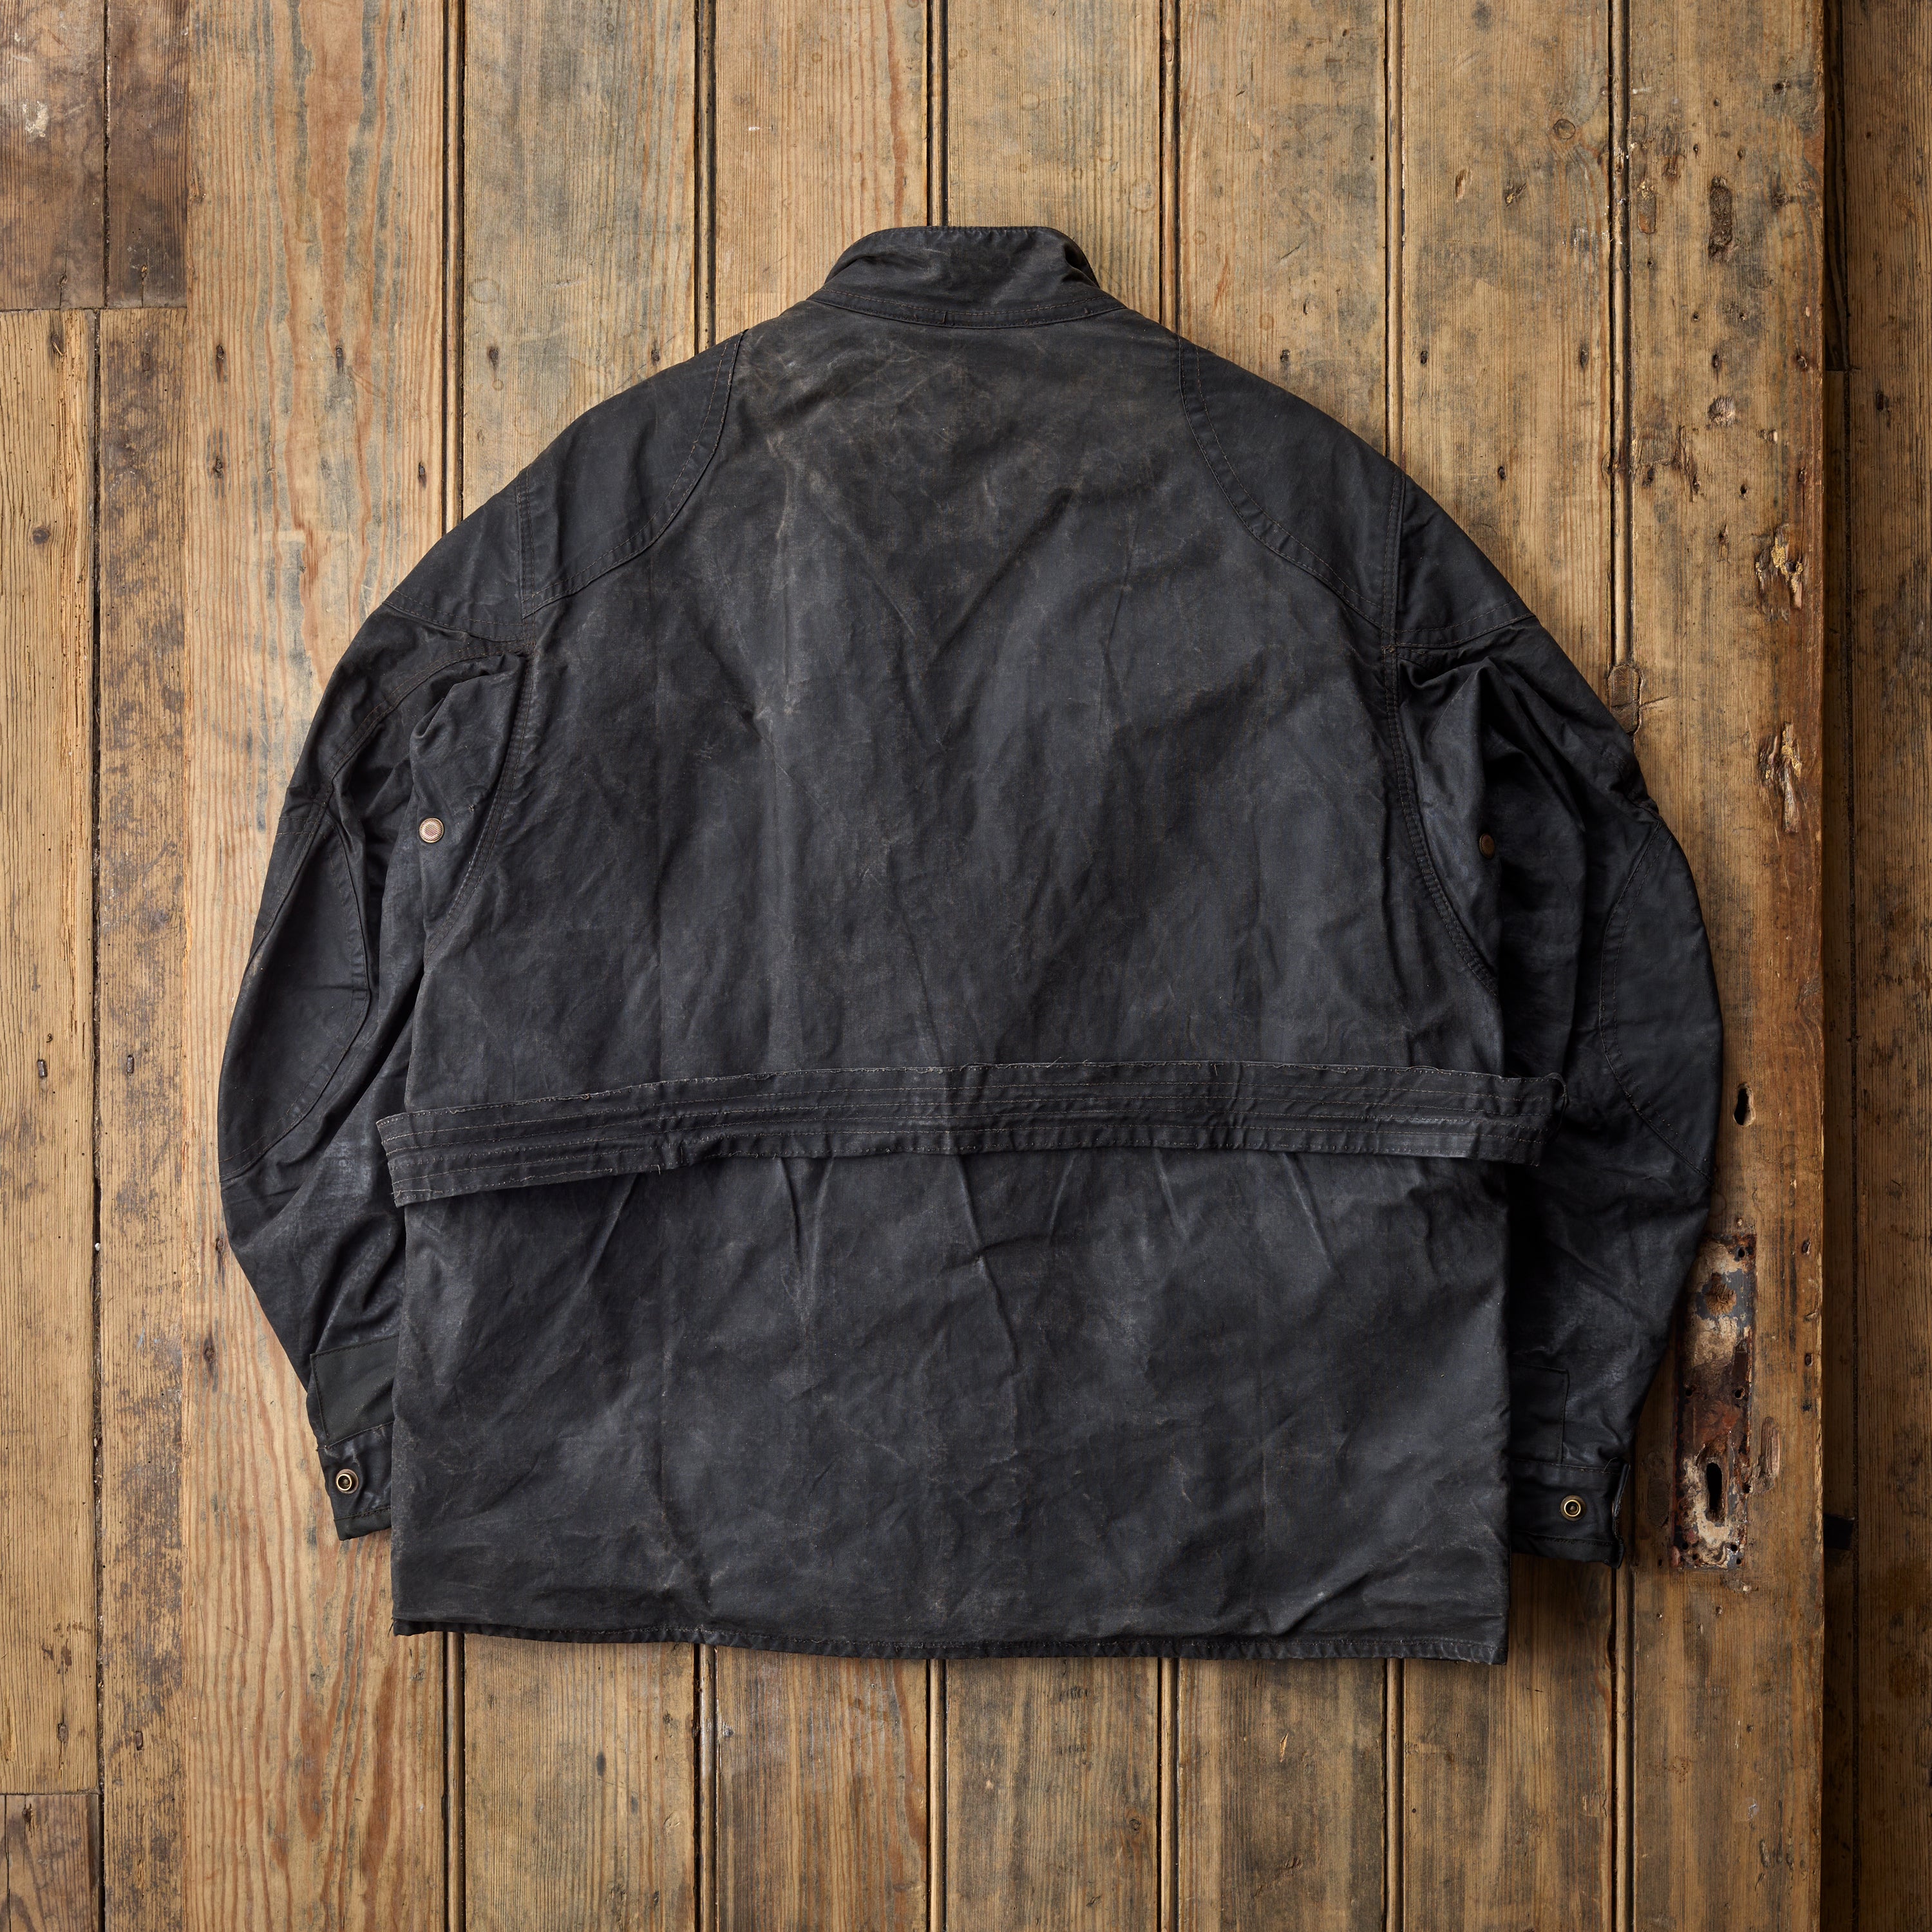 The Belstaff Vintage Belted Jacket